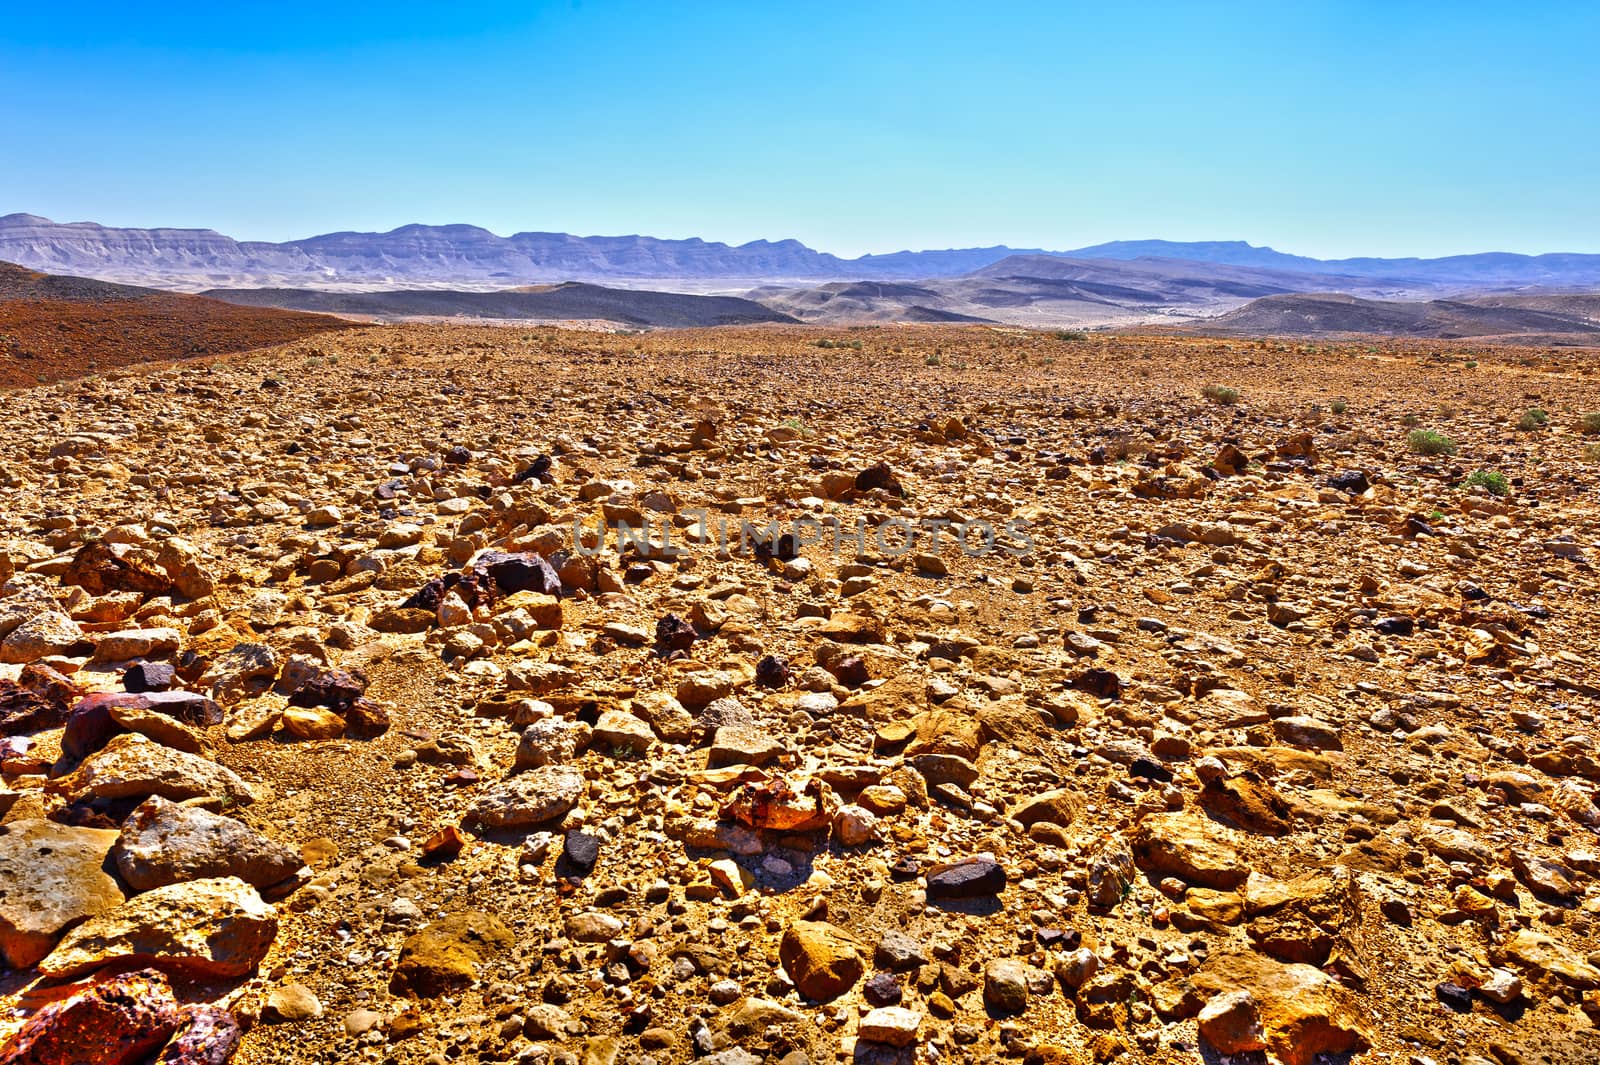 Big Stones of Grand Crater in Negev Desert, Israel